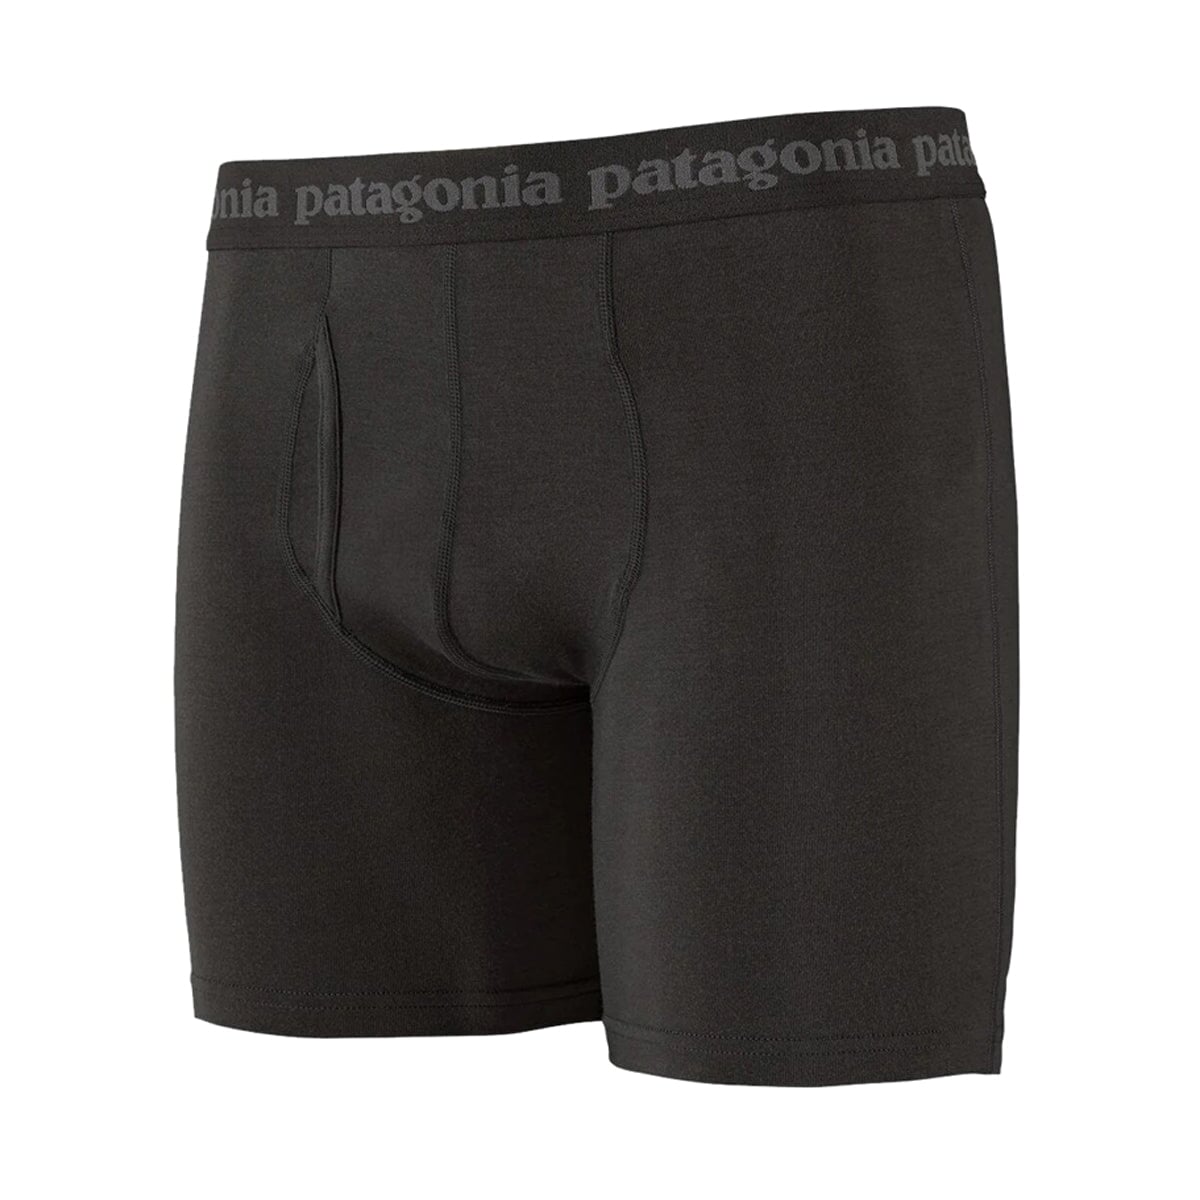 Patagonia Men's Essential Boxer Briefs - 6" - Black Unterhose Patagonia 